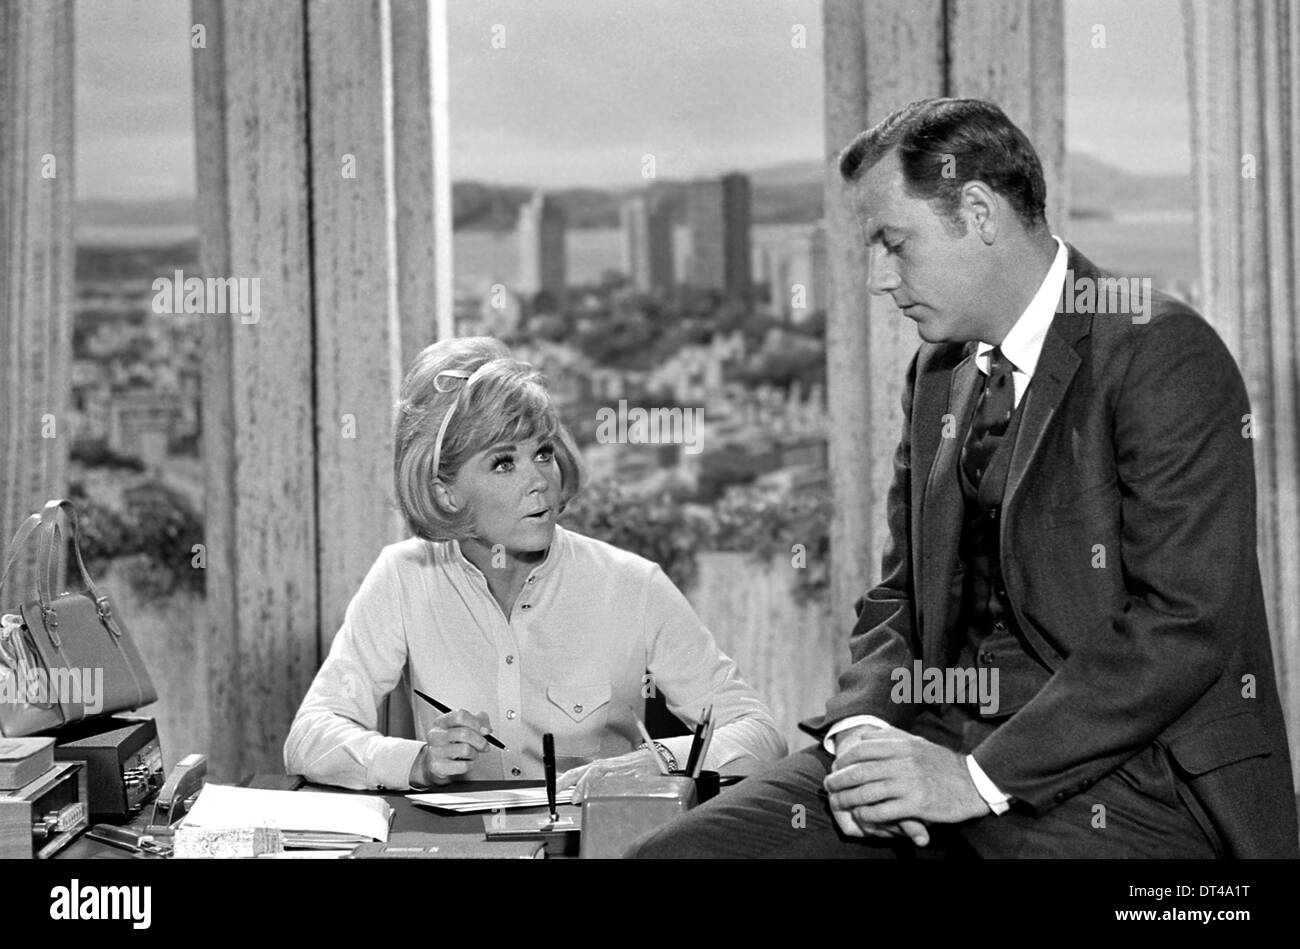 DORIS DAY American cantante y actriz de cine en su show de TV en 1969 con MacLean Stevenson. Episodio titulado Doris huelgas fuera Foto de stock